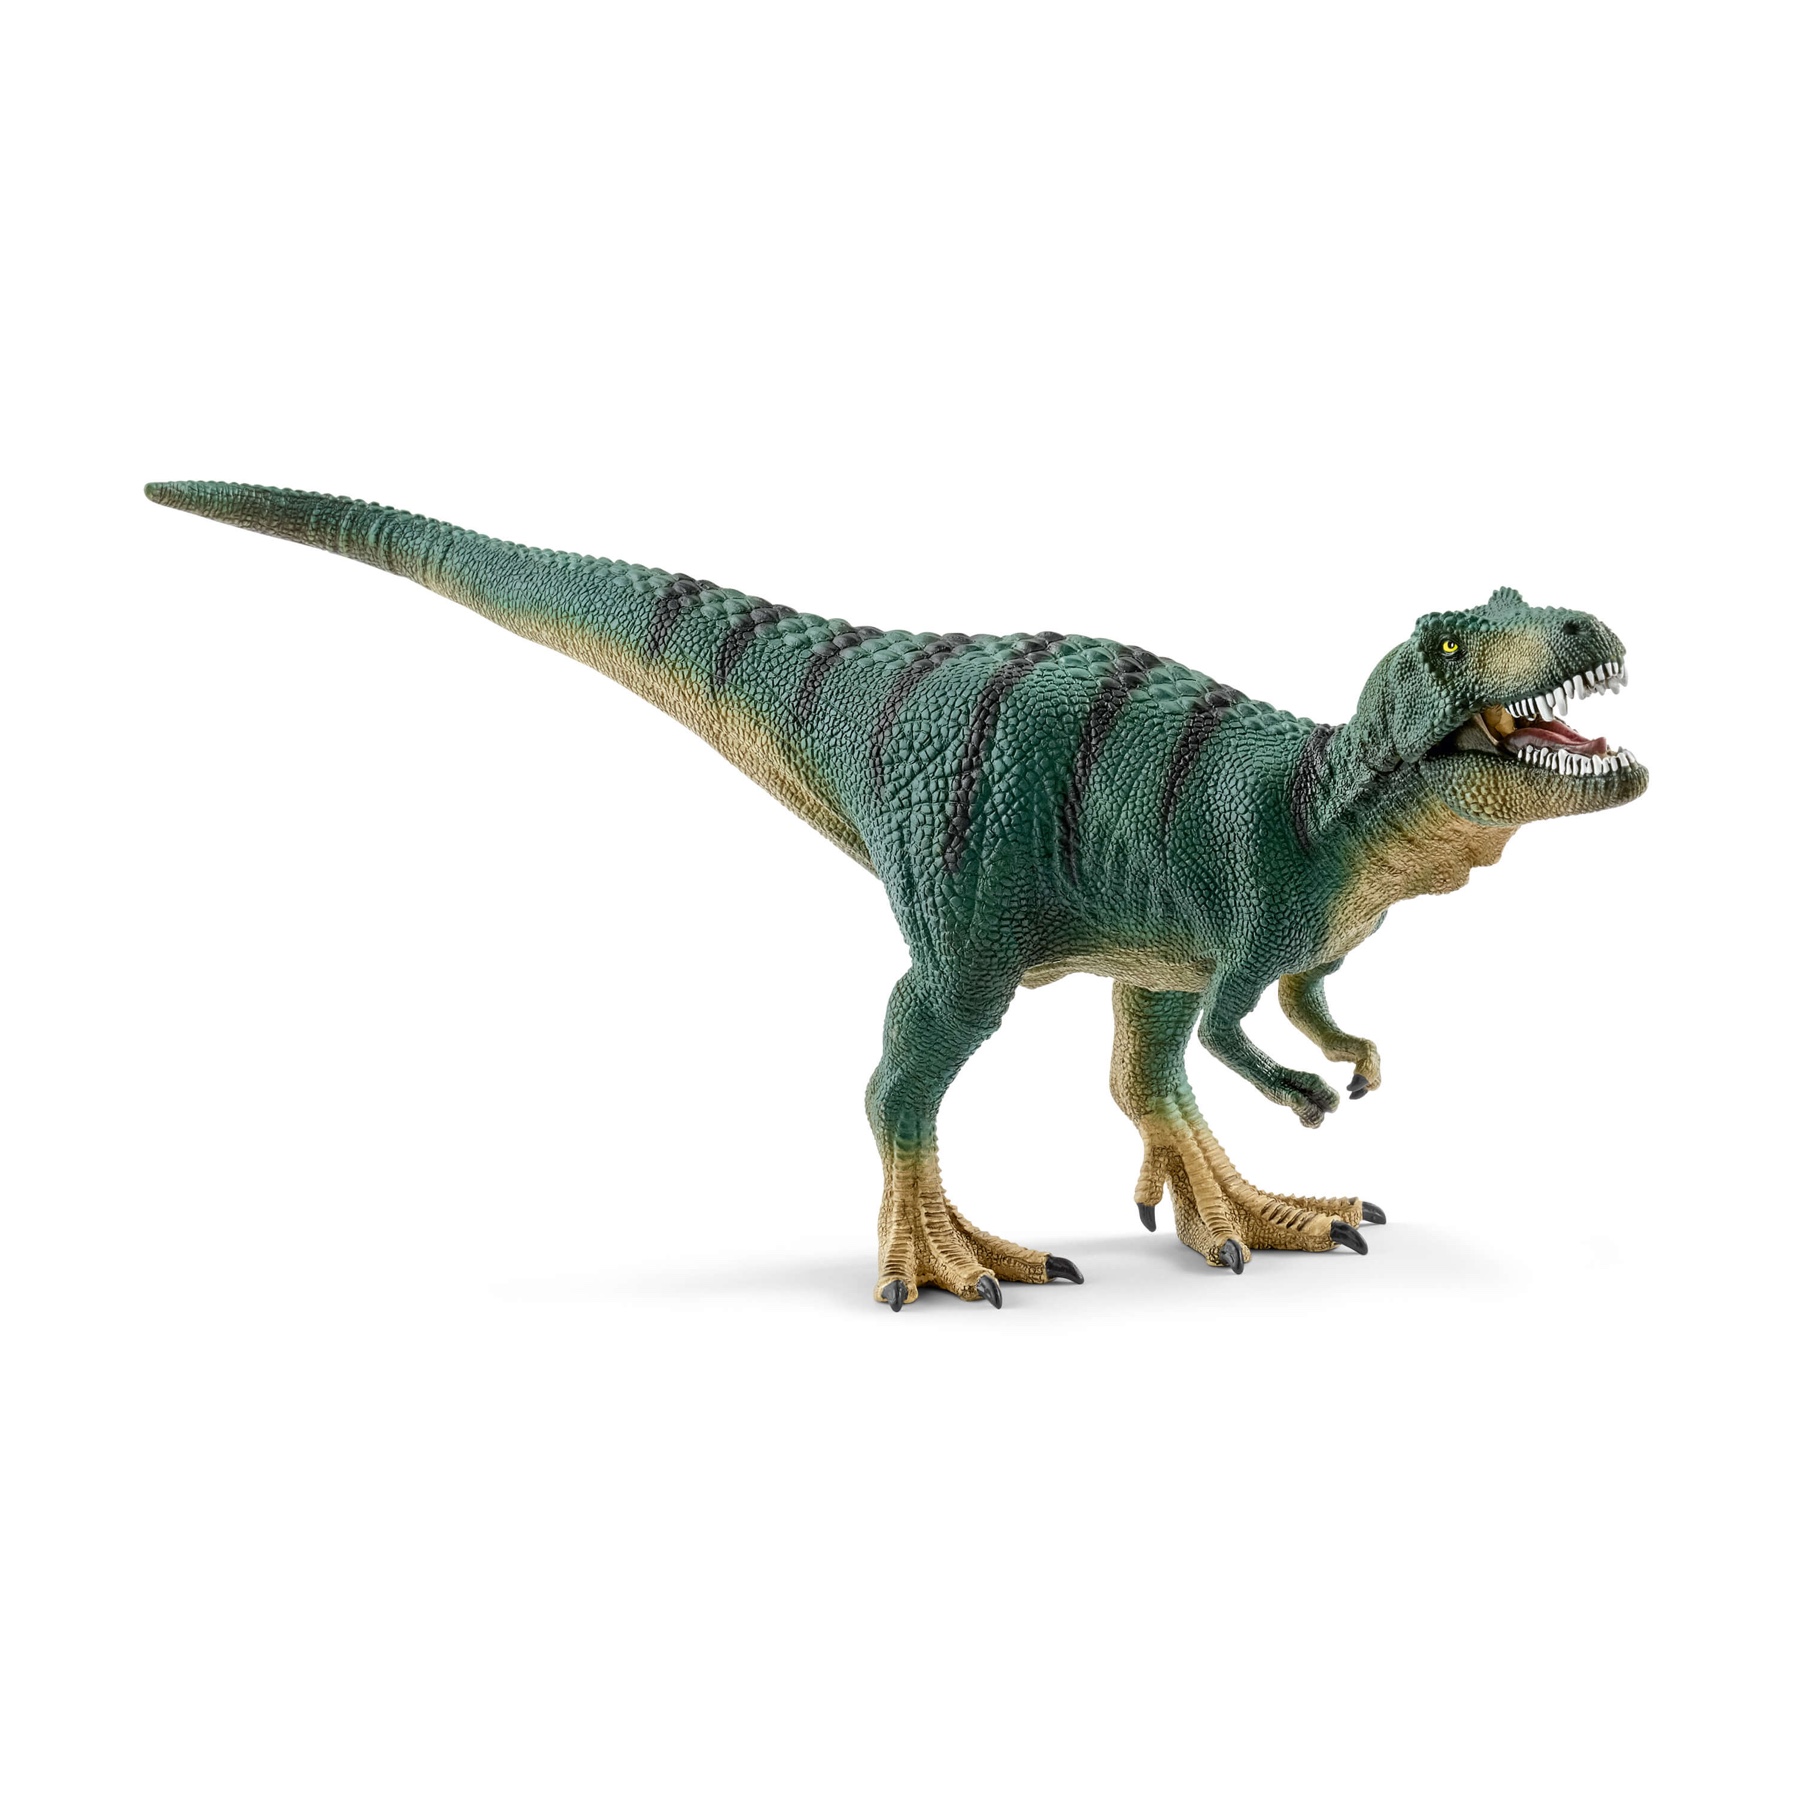 Schleich Dinosaurs Tyrannosaurus Rex